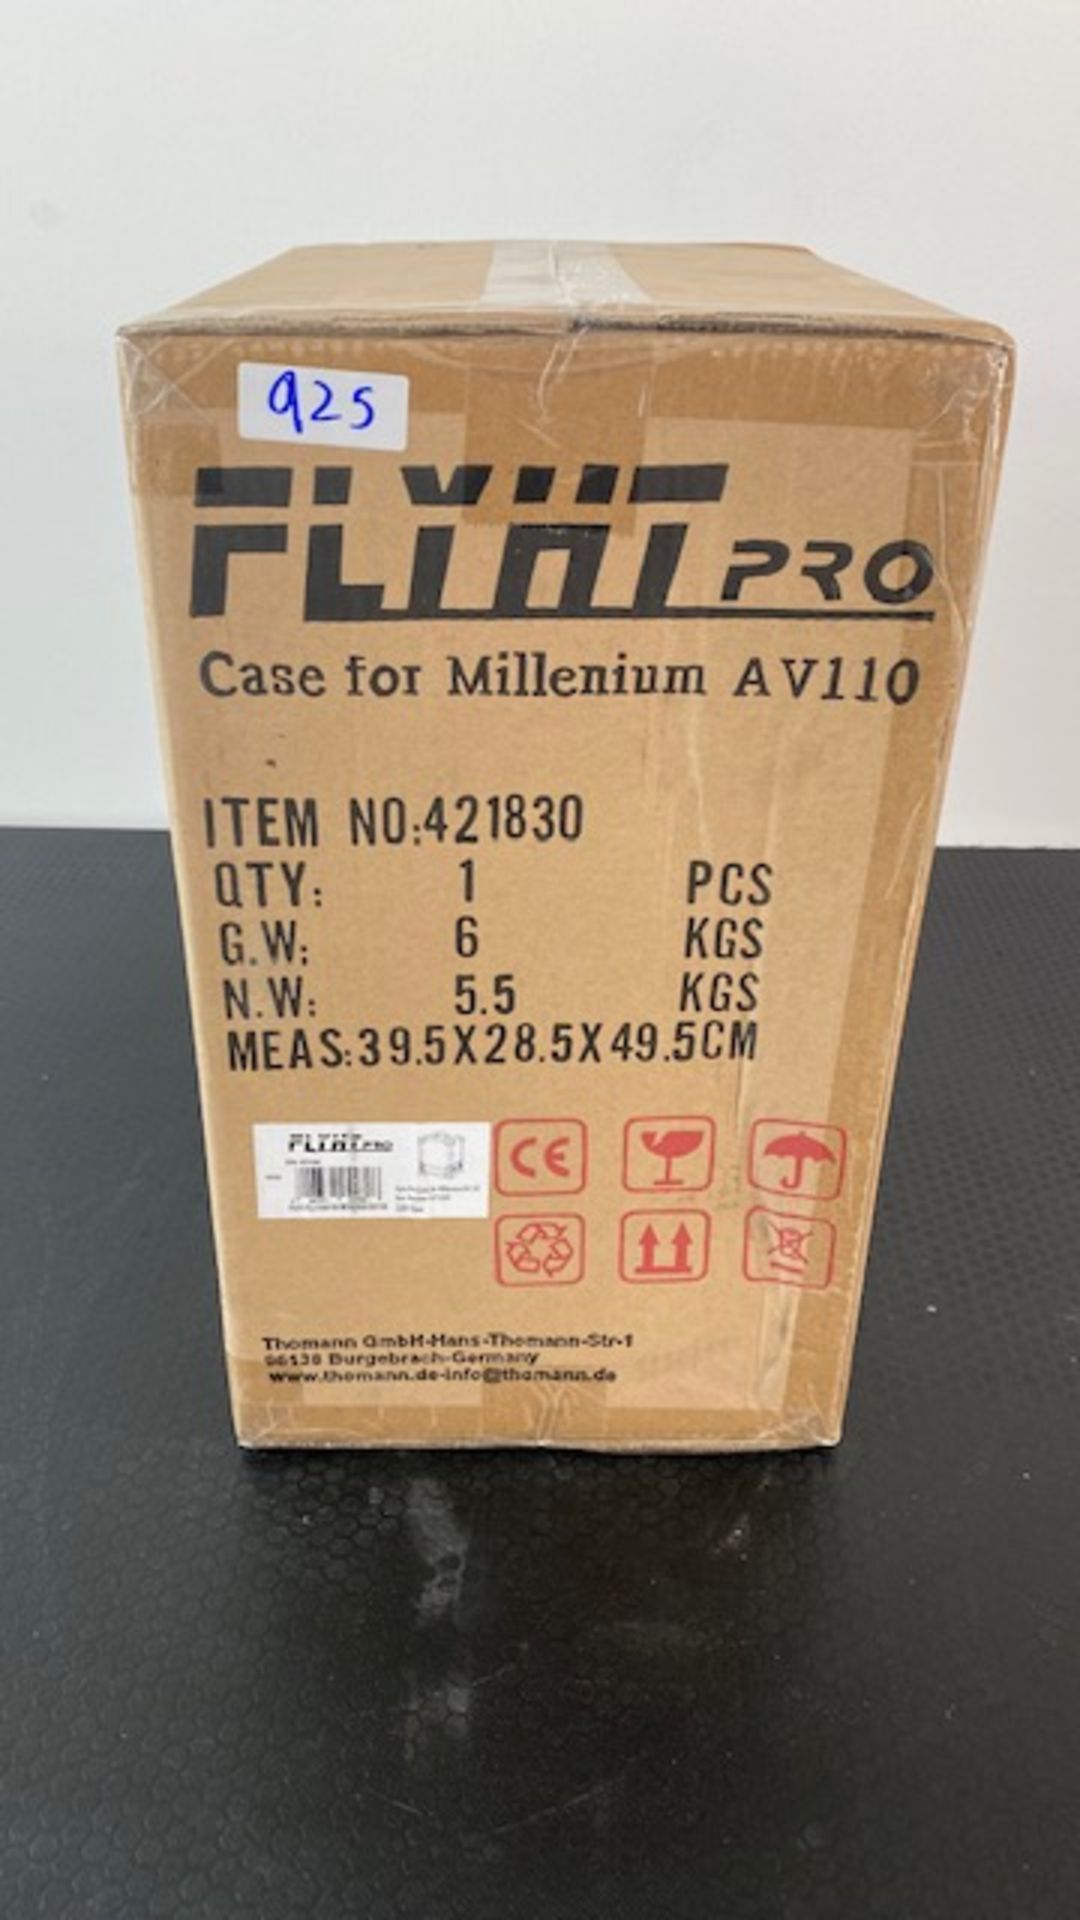 1 x FLYHT PRO Flight Case For Millenium AV110 - New / Unopened - Ref: 925 - CL581 - Location: - Image 6 of 6